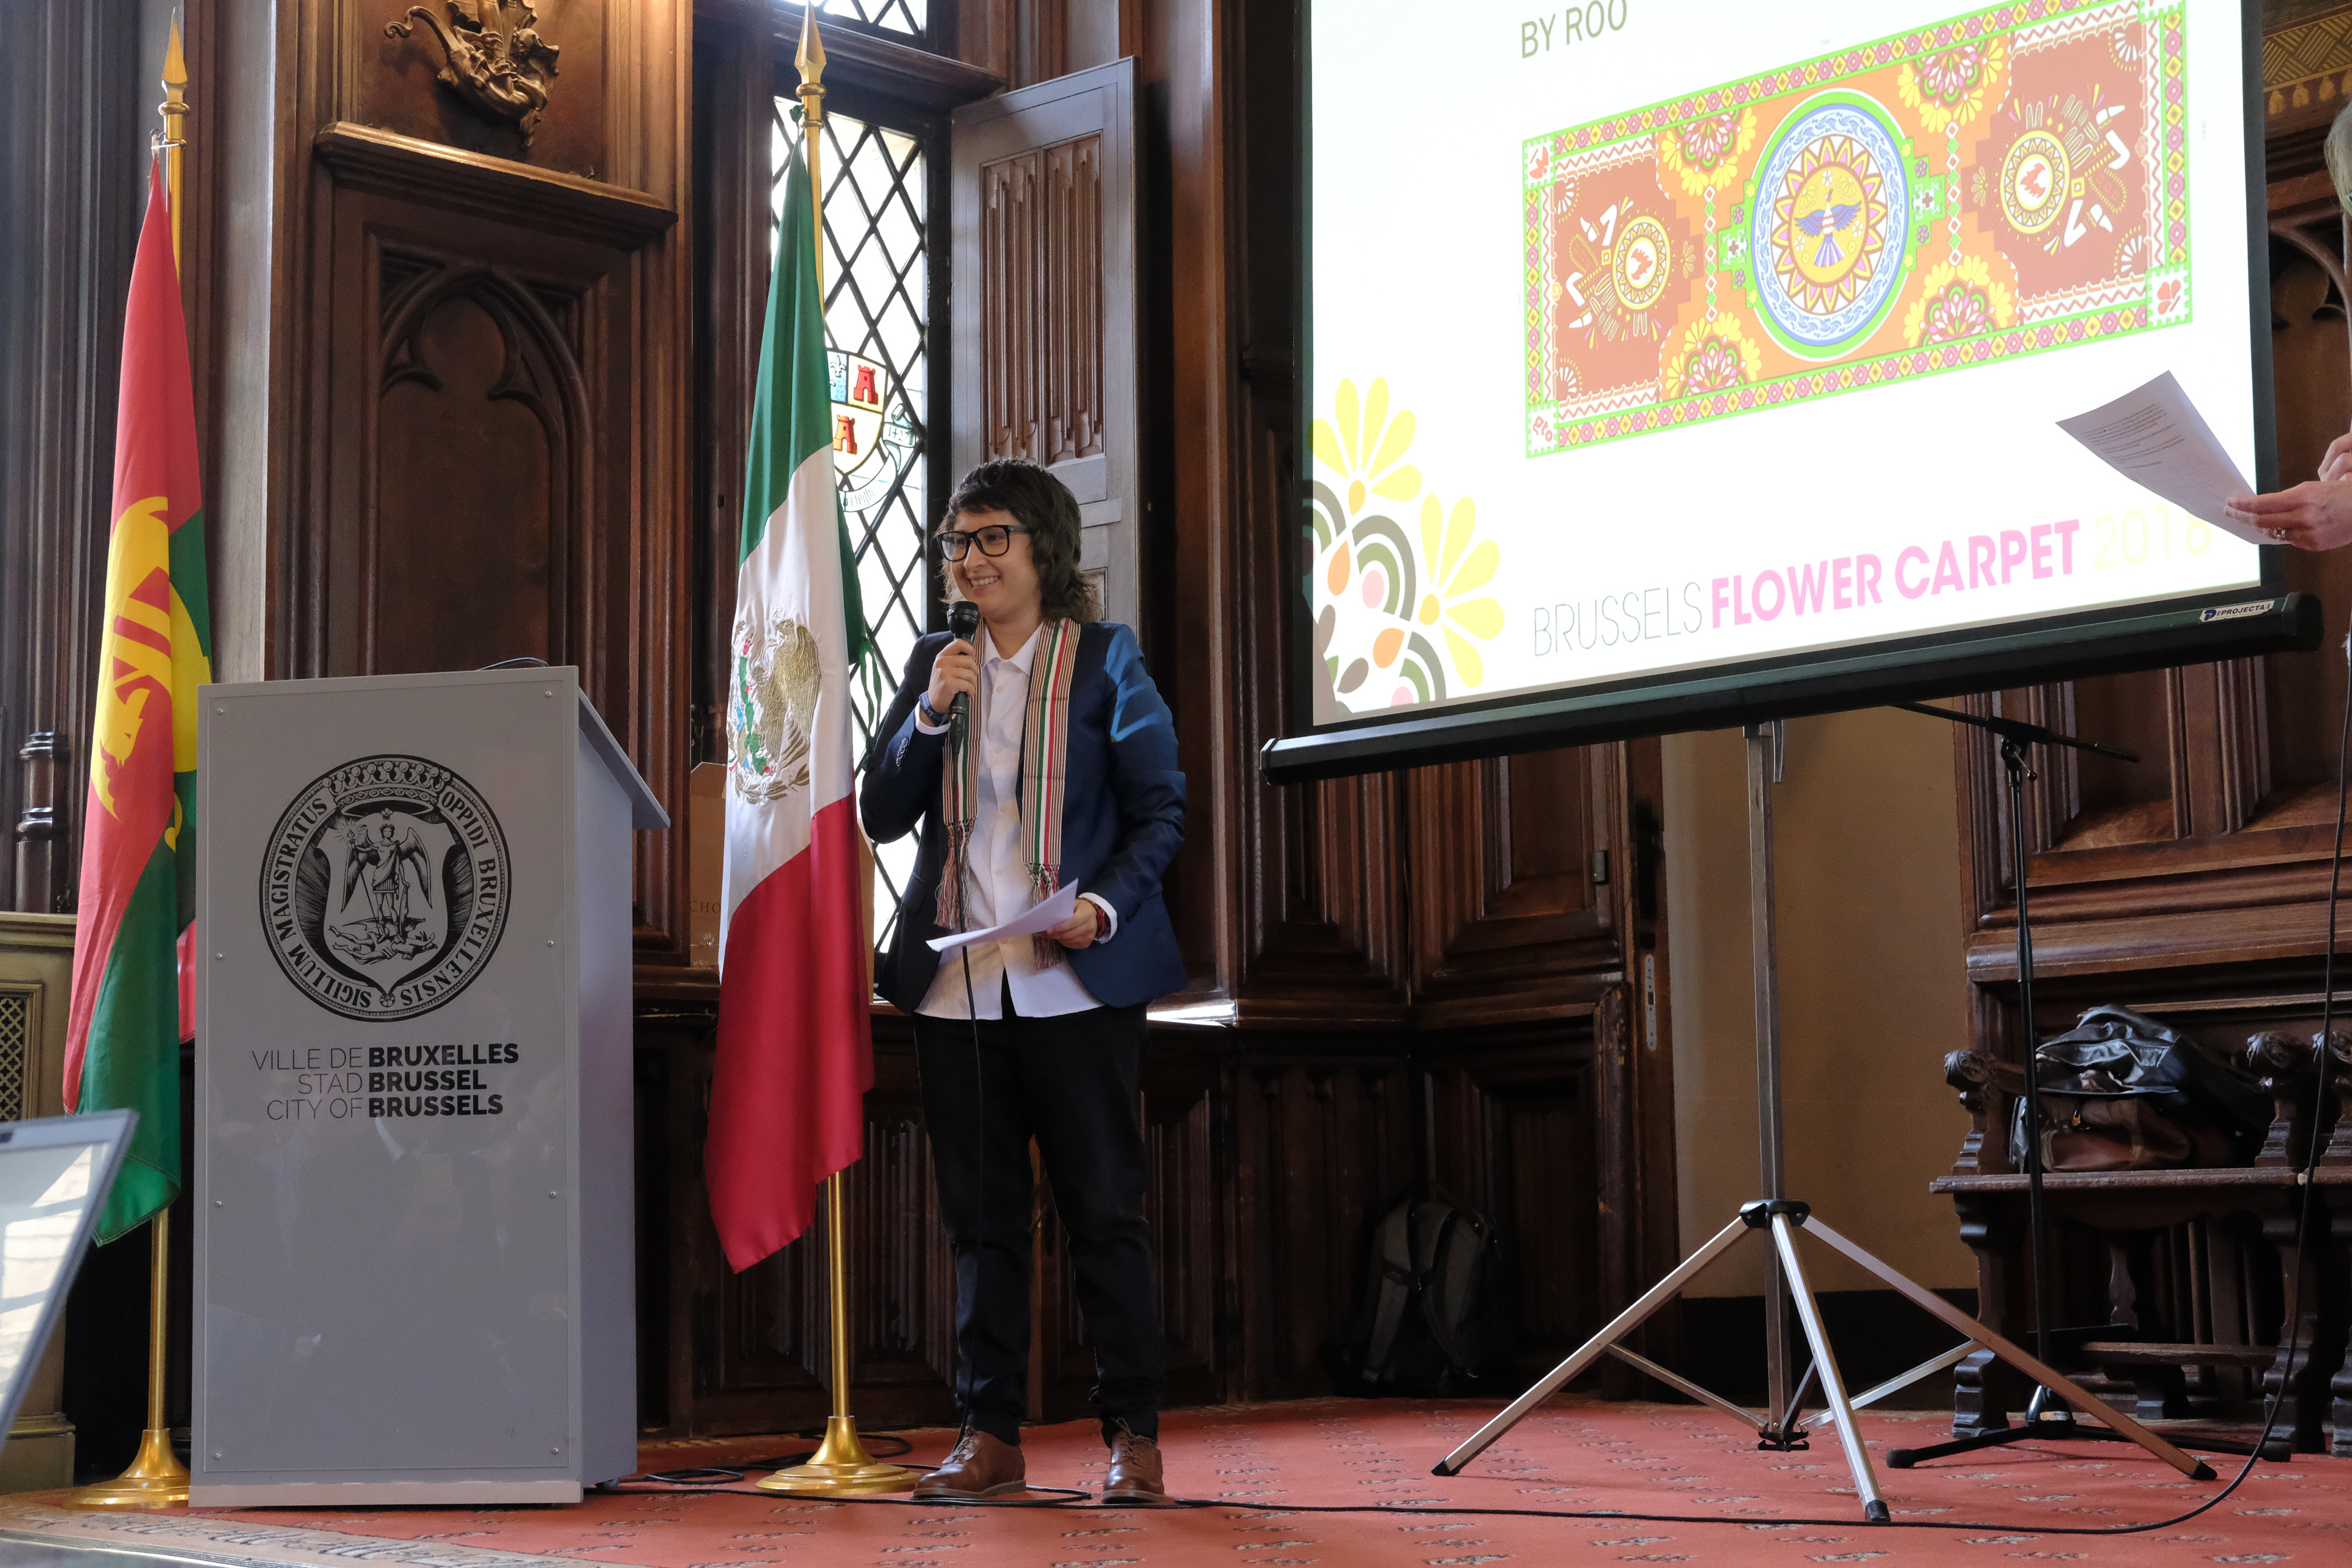 Le Mexique à l'honneur pour la présentation du tapis de fleurs 2018 - BX1